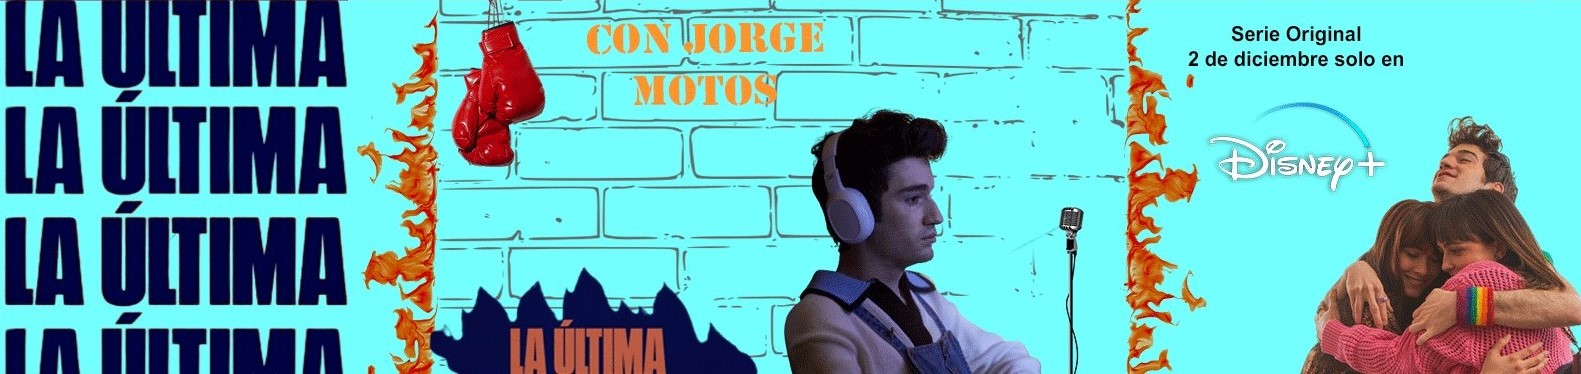 Jorge Motos estrena"La Última"